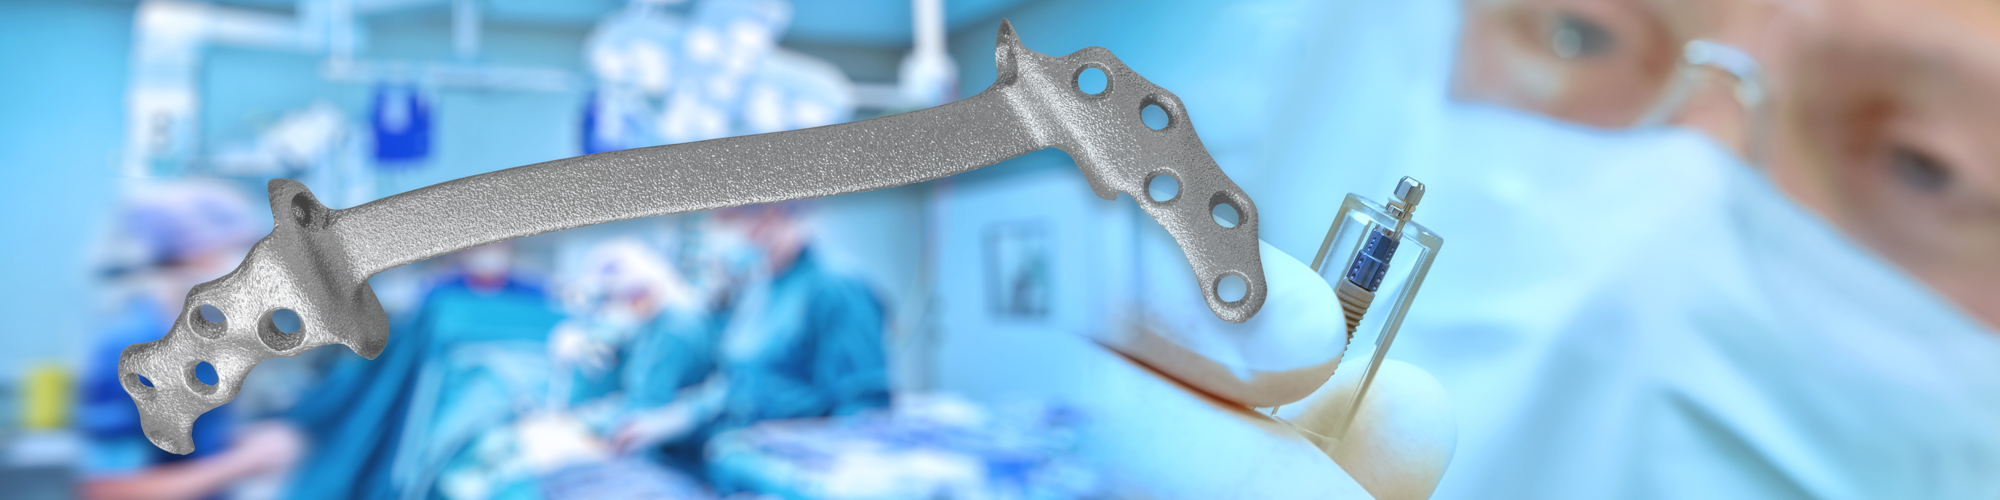 Medizinische Instrumente und Implantate